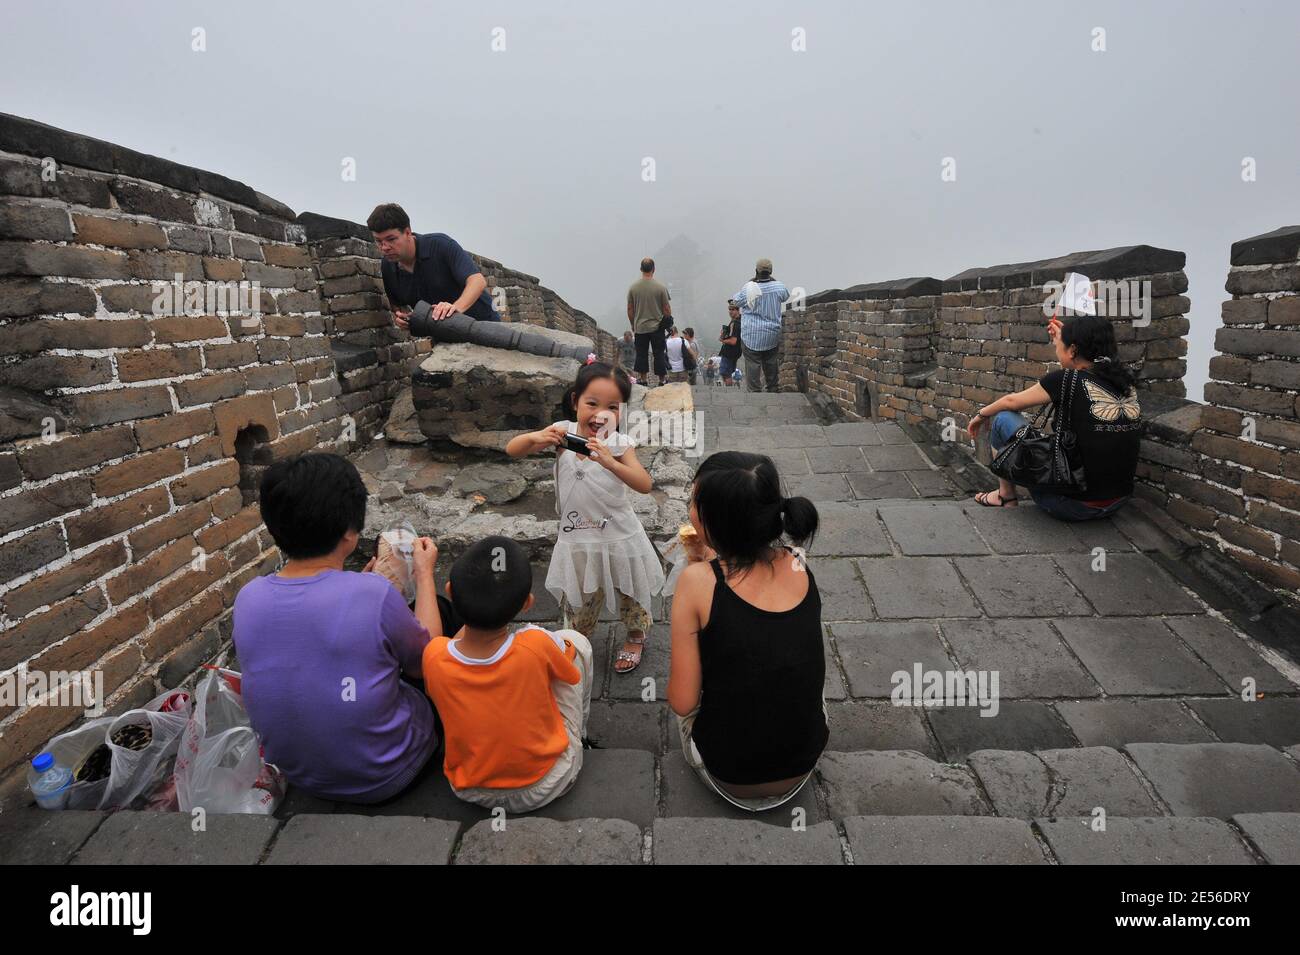 Atmosphère sur le Grand mur dans le village de Mutianyu, à 150 km de Beijing. Quatre jours avant la cérémonie d'ouverture des XXIX Jeux olympiques, le 4 août 2008. Photo de Gouhier-Hahn-Nebinger/ABACAPRESS.COM Banque D'Images